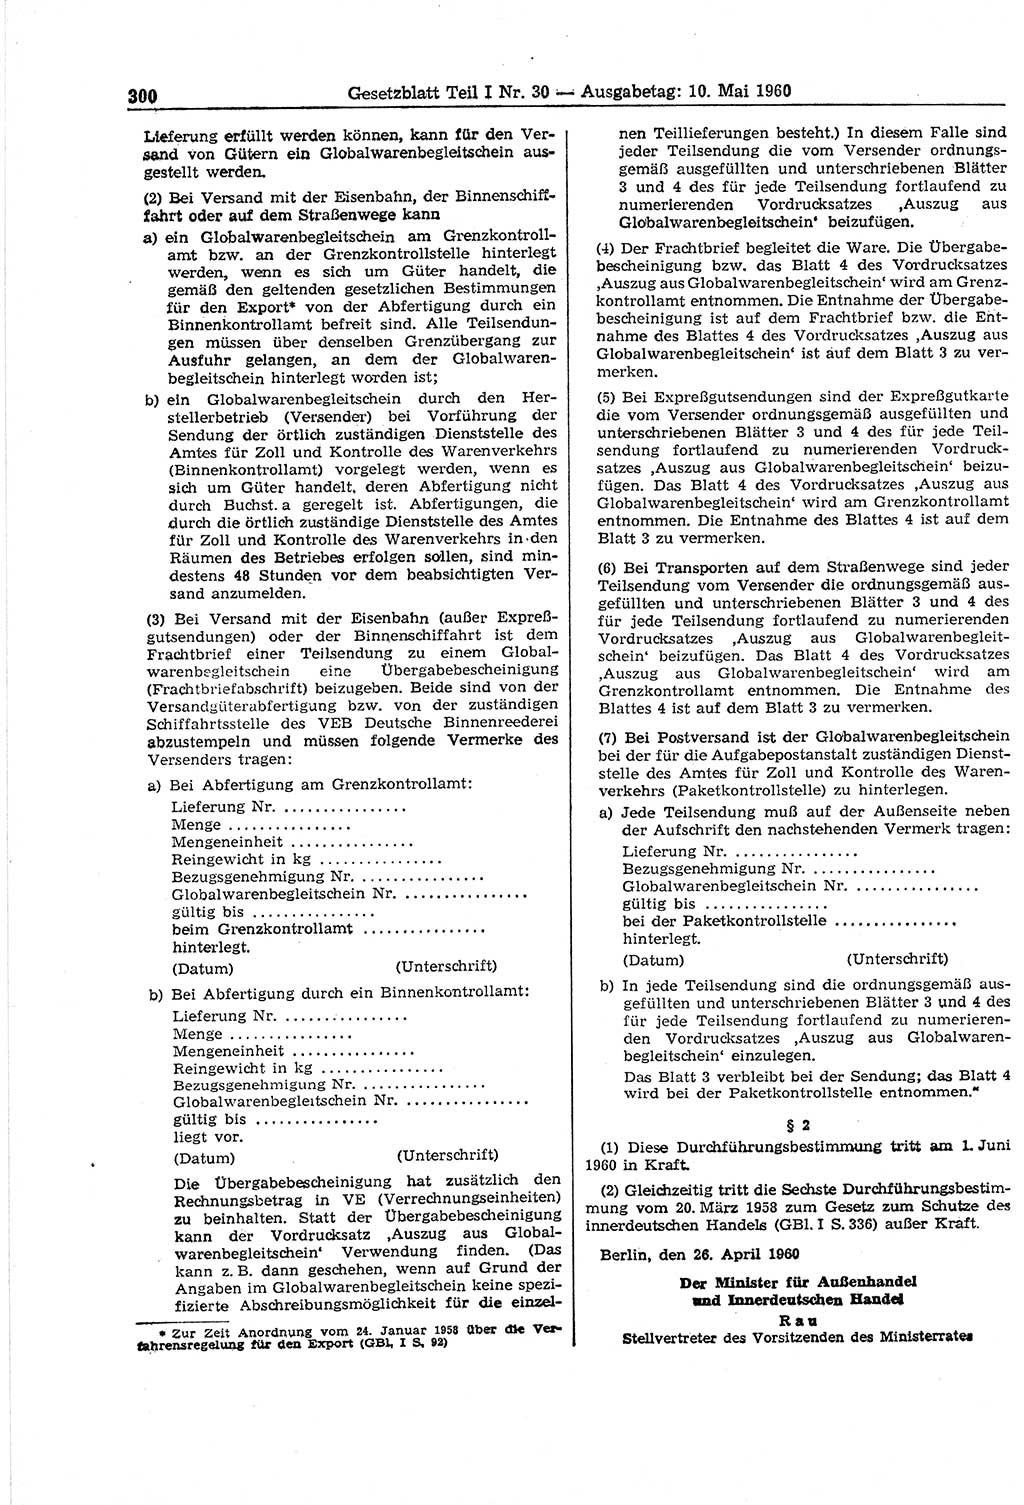 Gesetzblatt (GBl.) der Deutschen Demokratischen Republik (DDR) Teil Ⅰ 1960, Seite 300 (GBl. DDR Ⅰ 1960, S. 300)